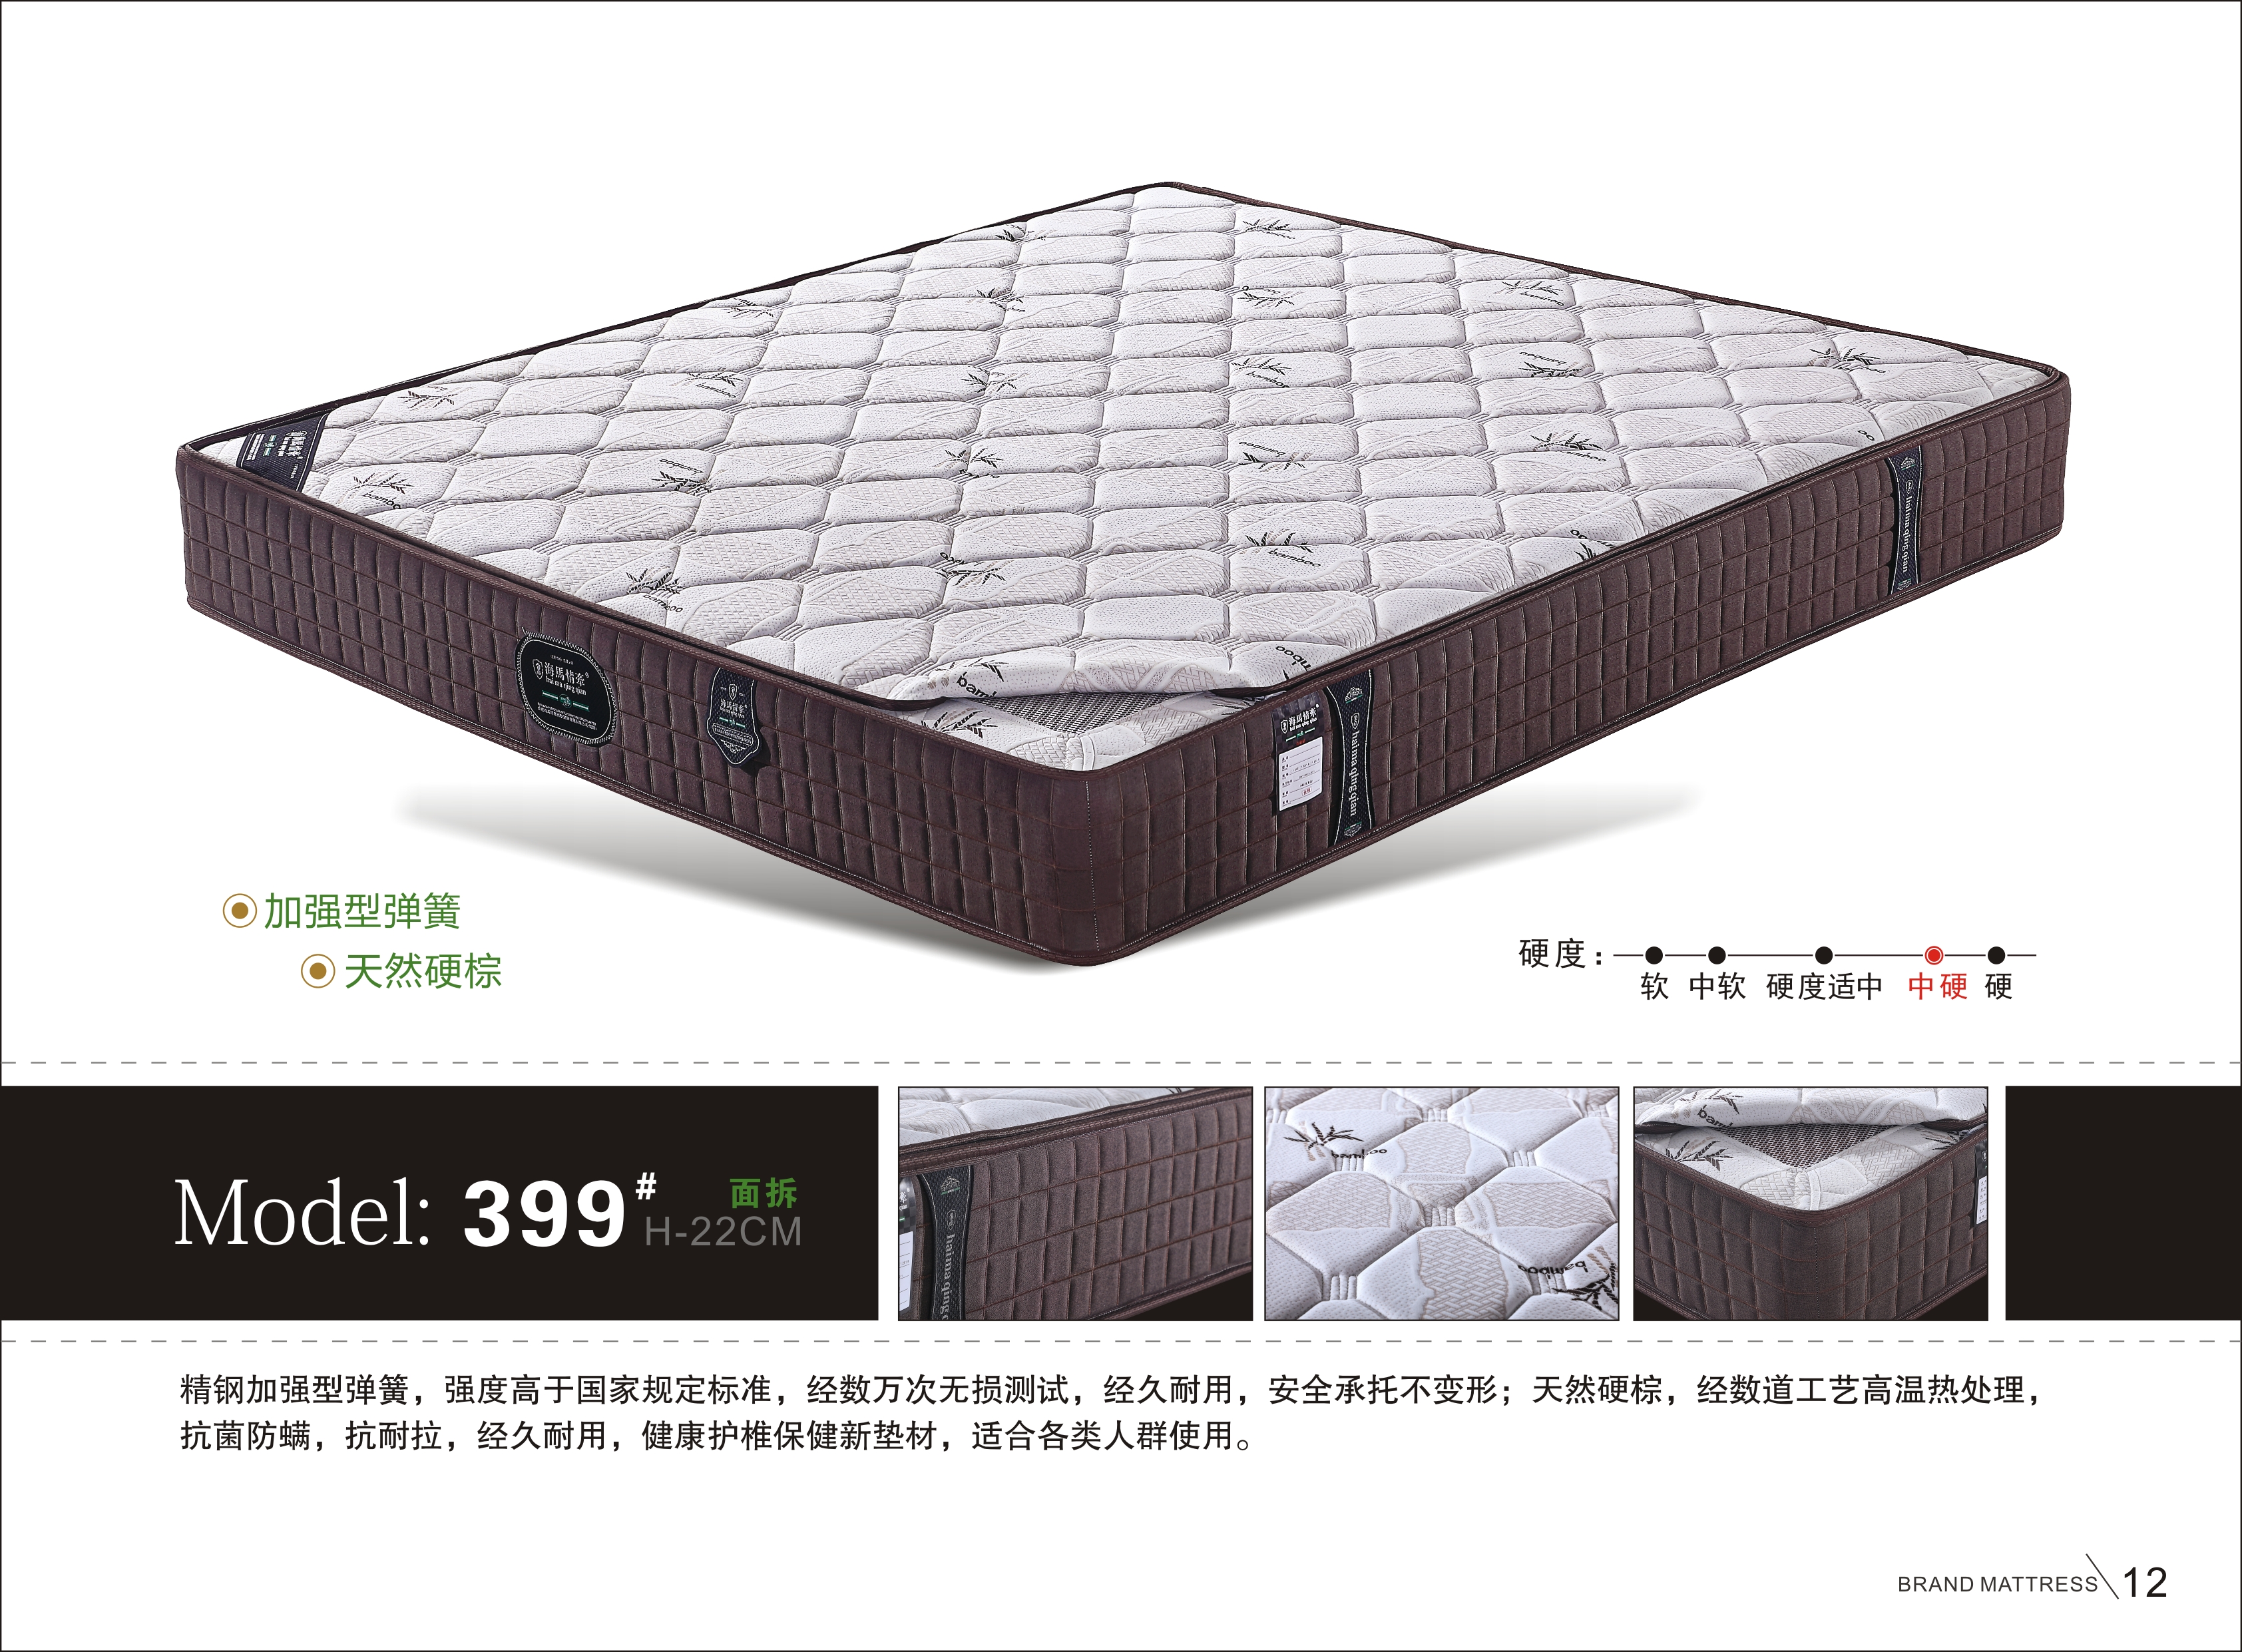 广州彩思床垫供应商_专业生产彩思床垫厂家_优质床垫价格